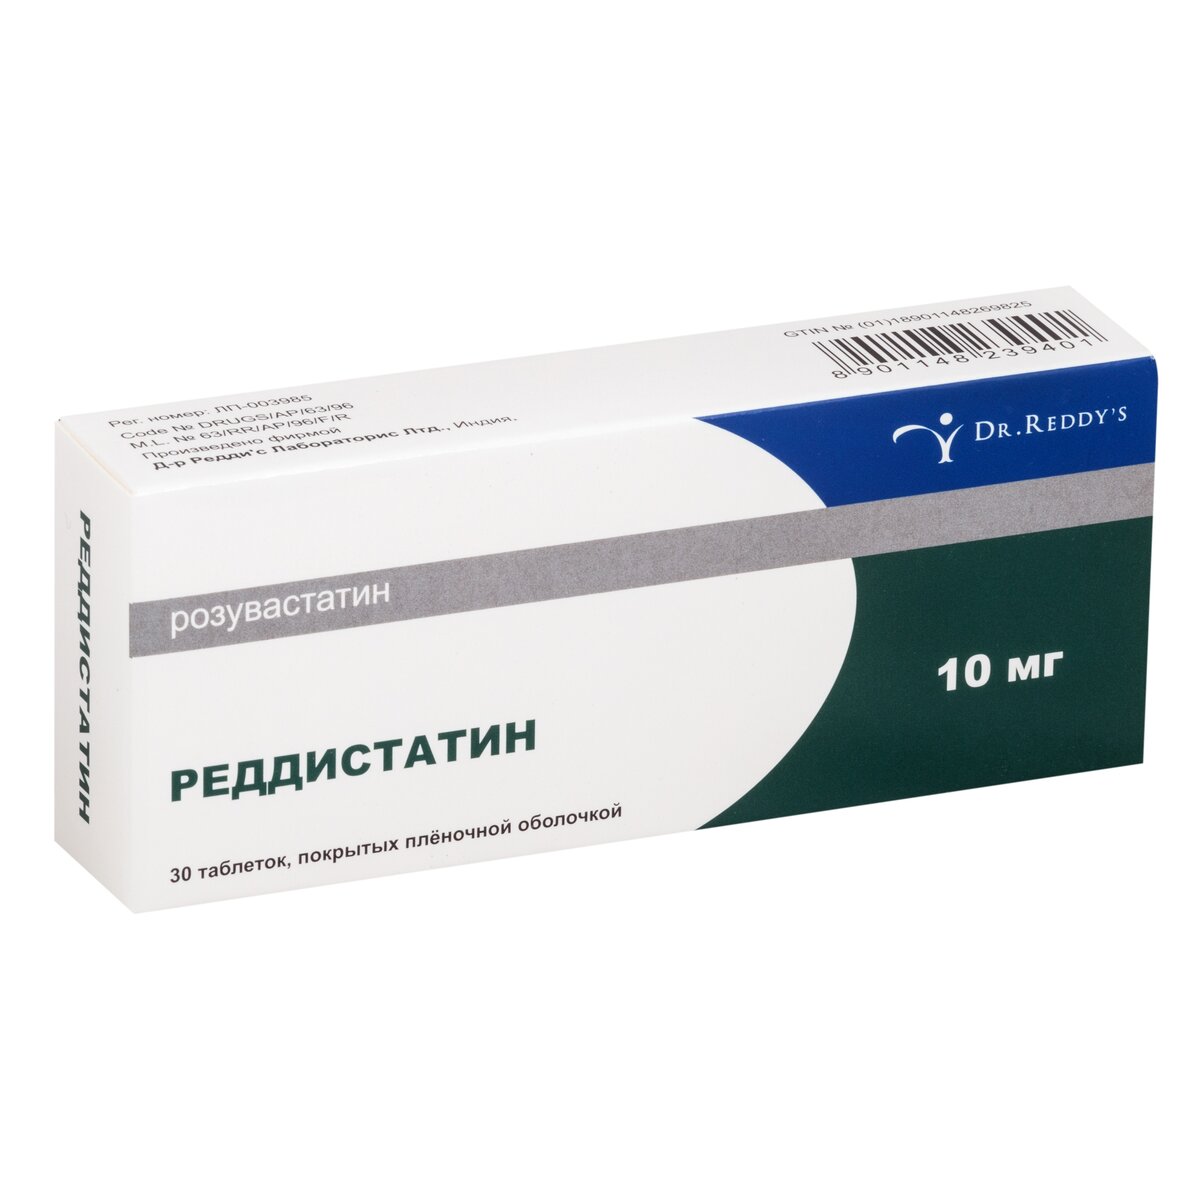 Реддистатин таблетки 10 мг 30 шт.